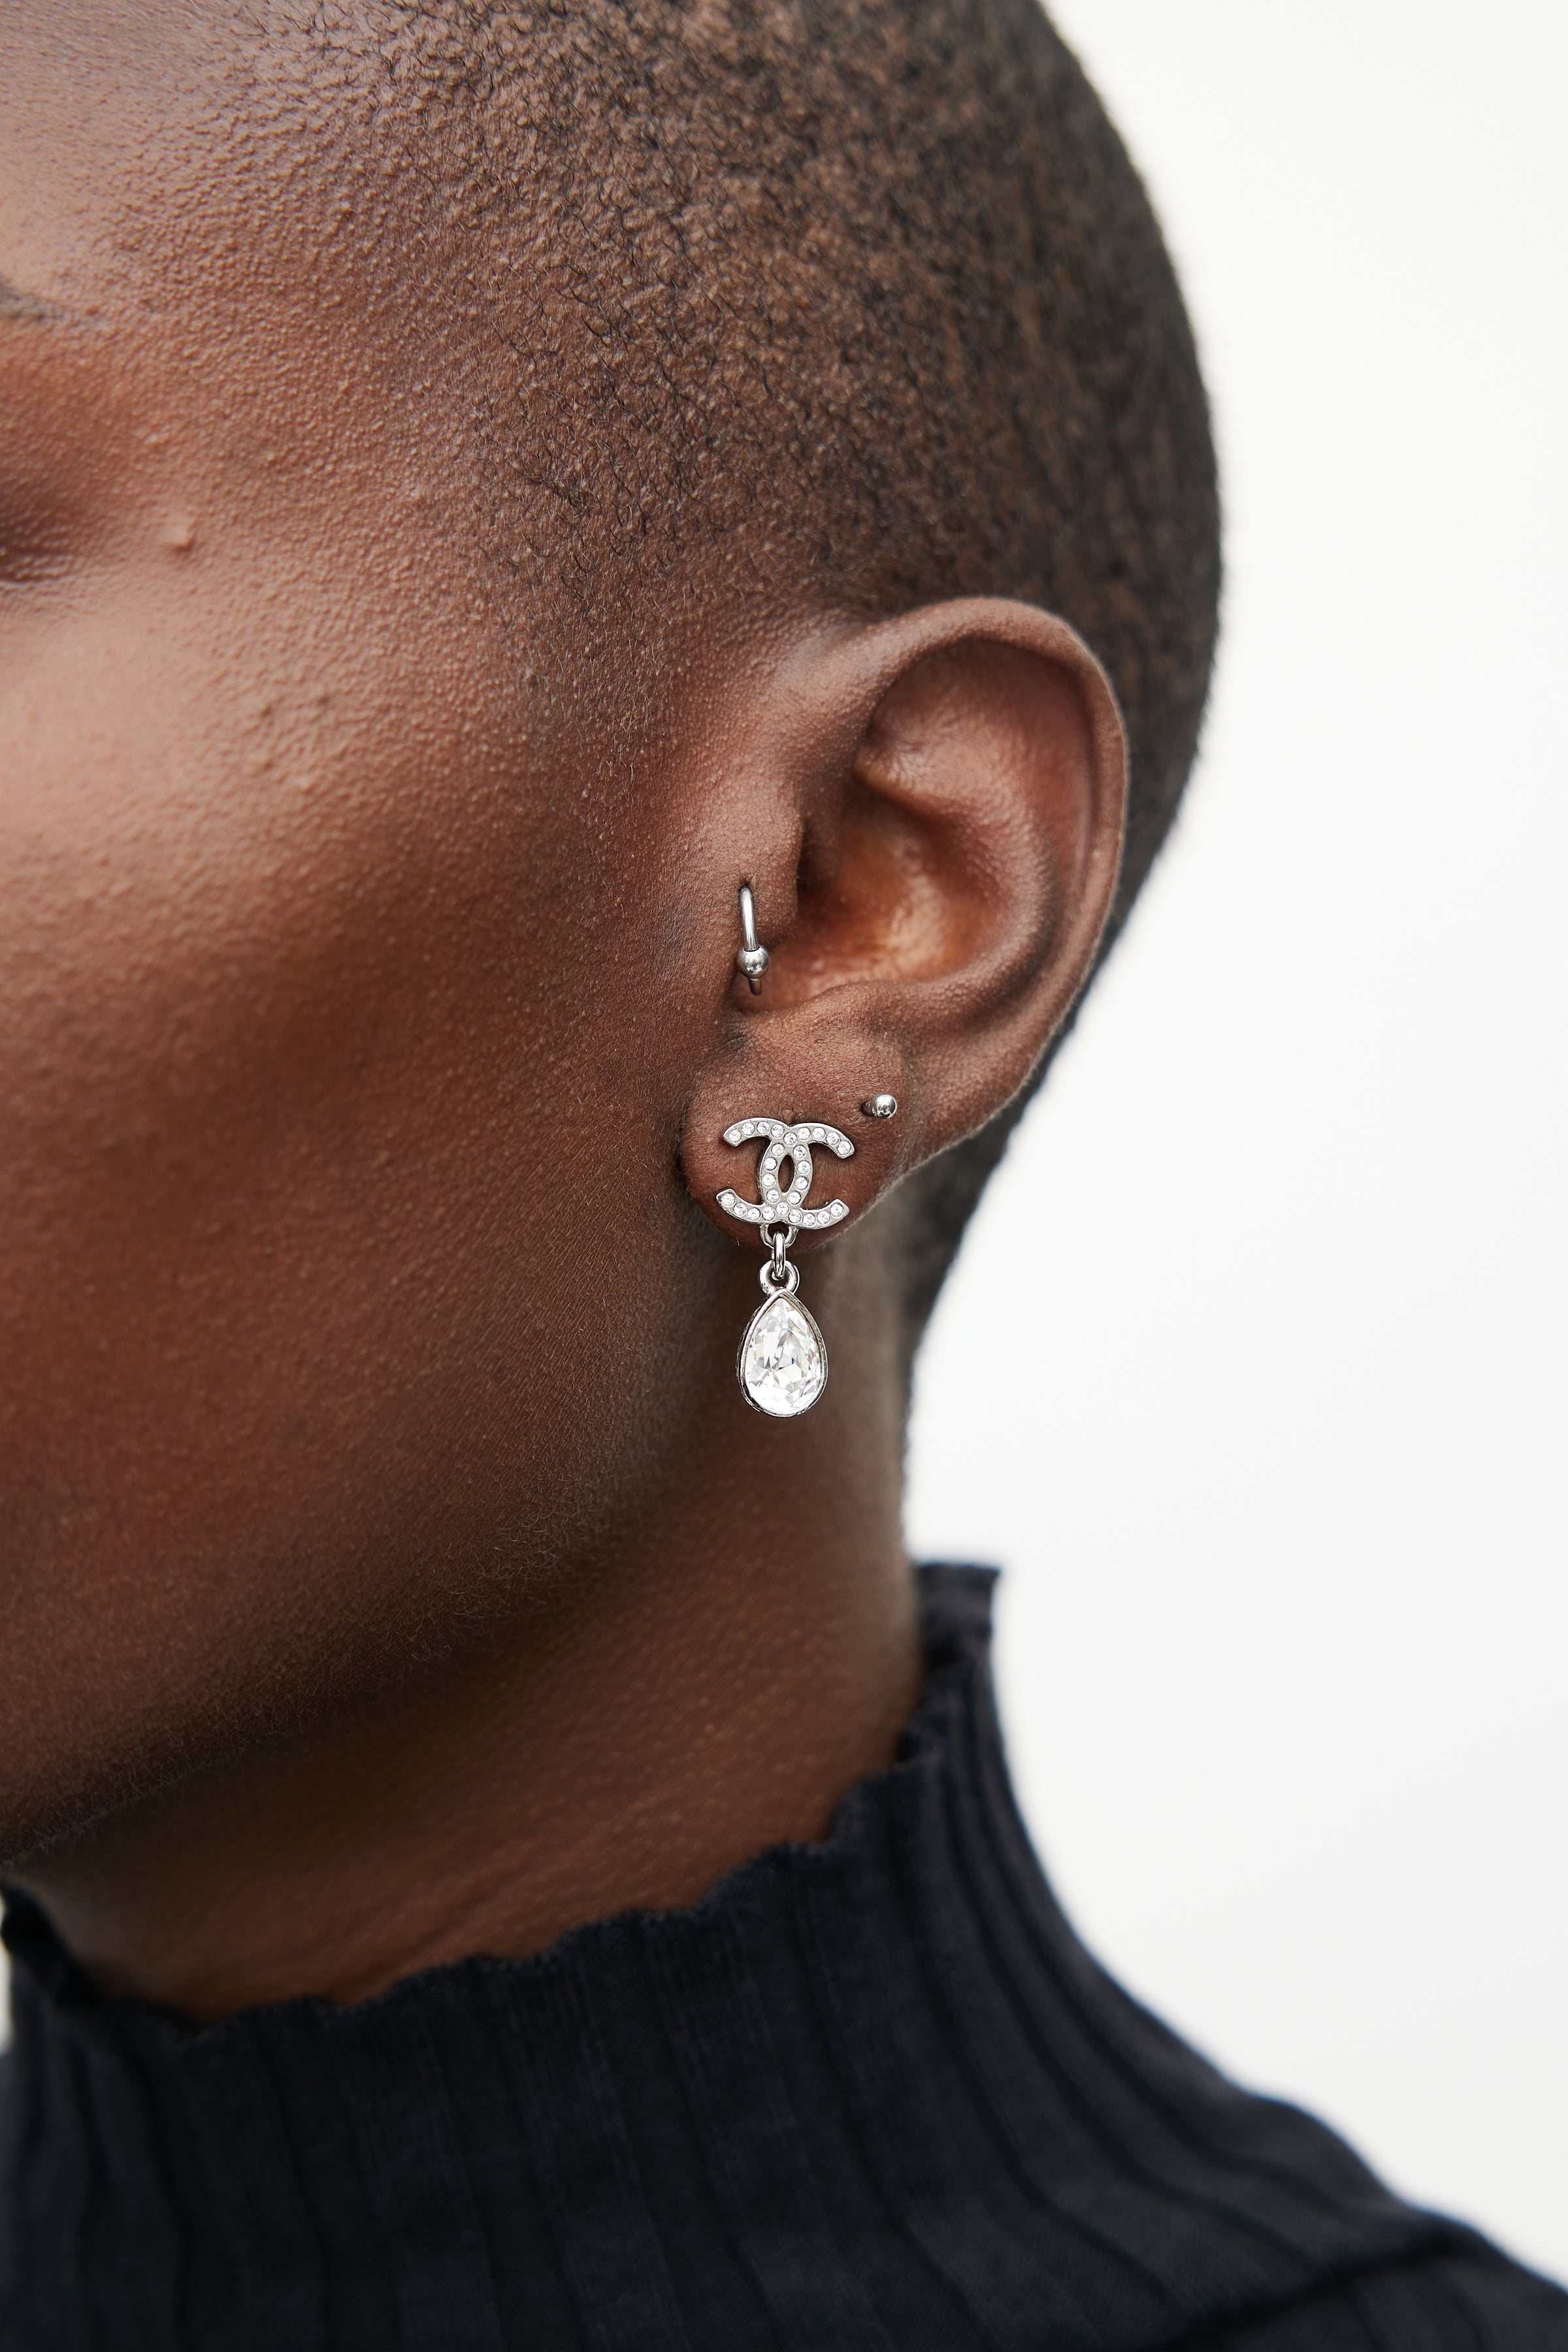 chanel earrings on ear